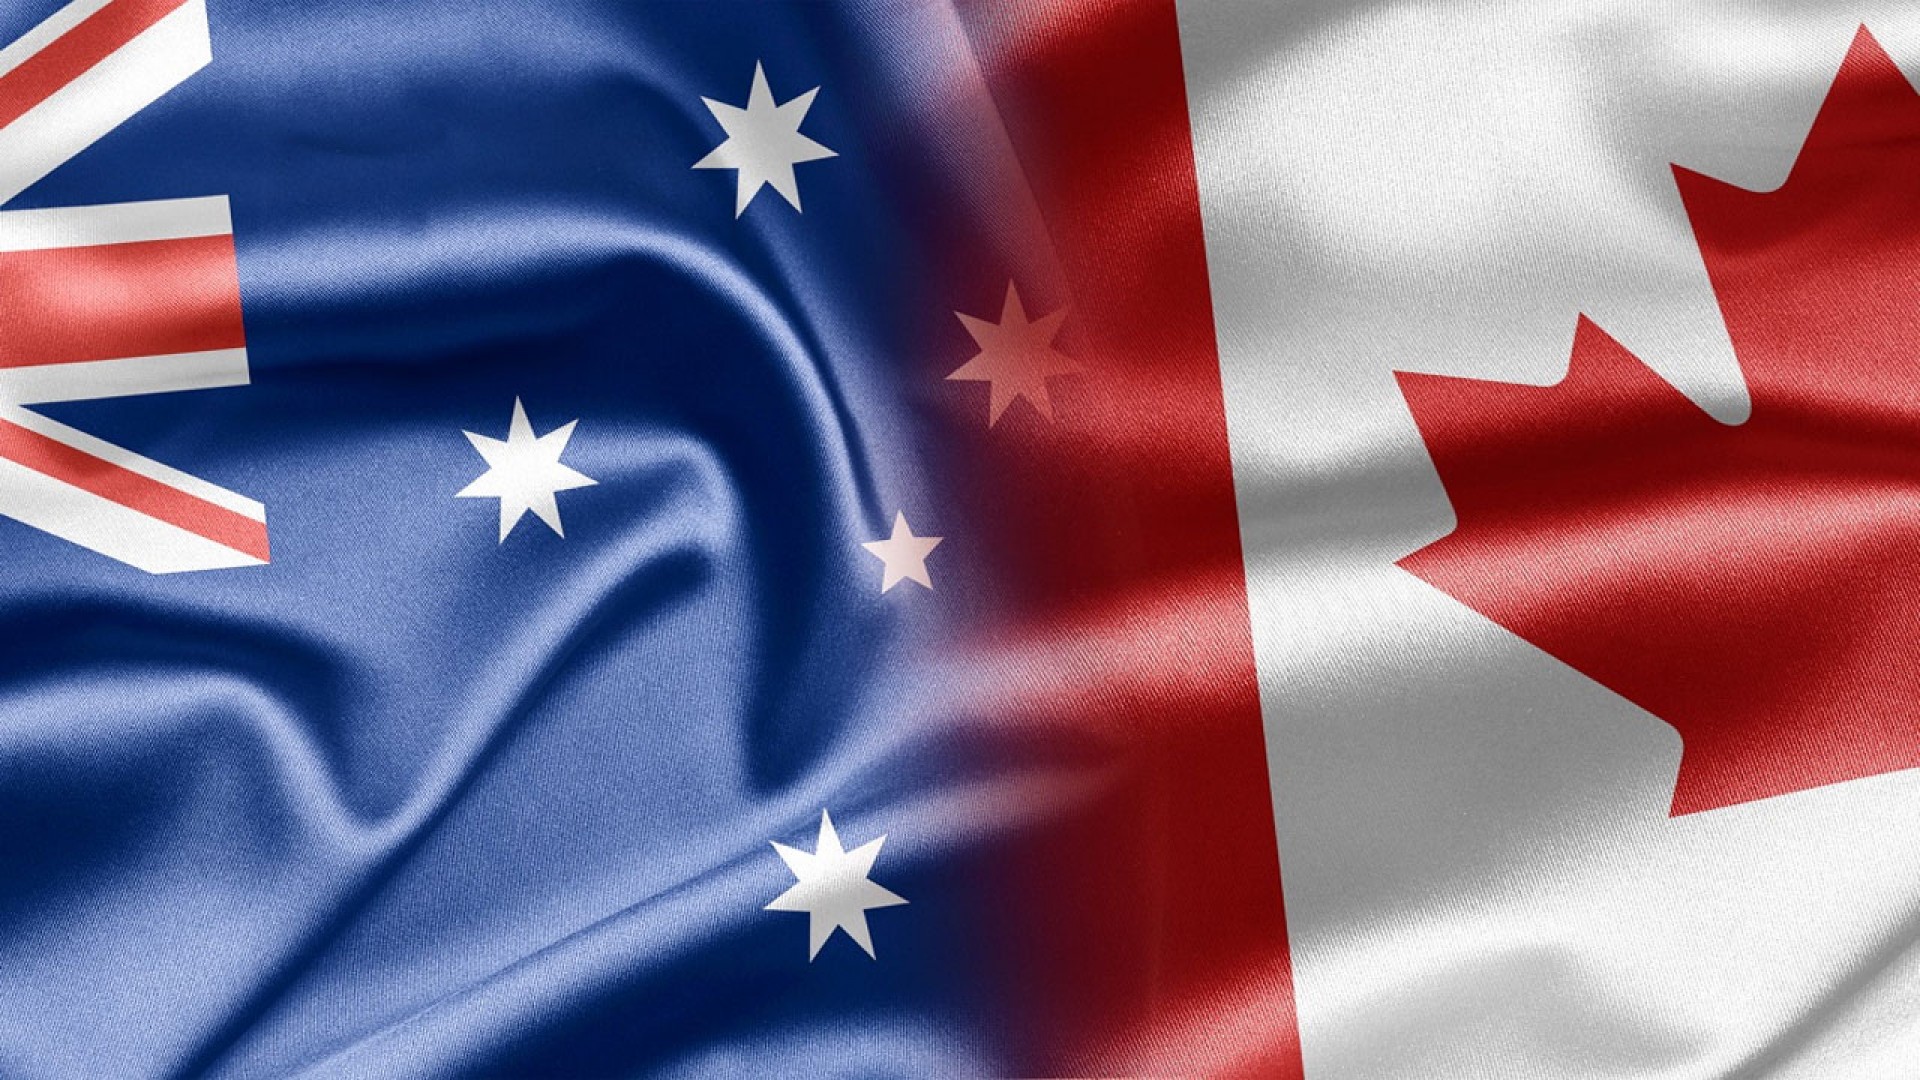 Du học Canada hay Úc: Đâu là quốc gia phù hợp nhất với bạn?